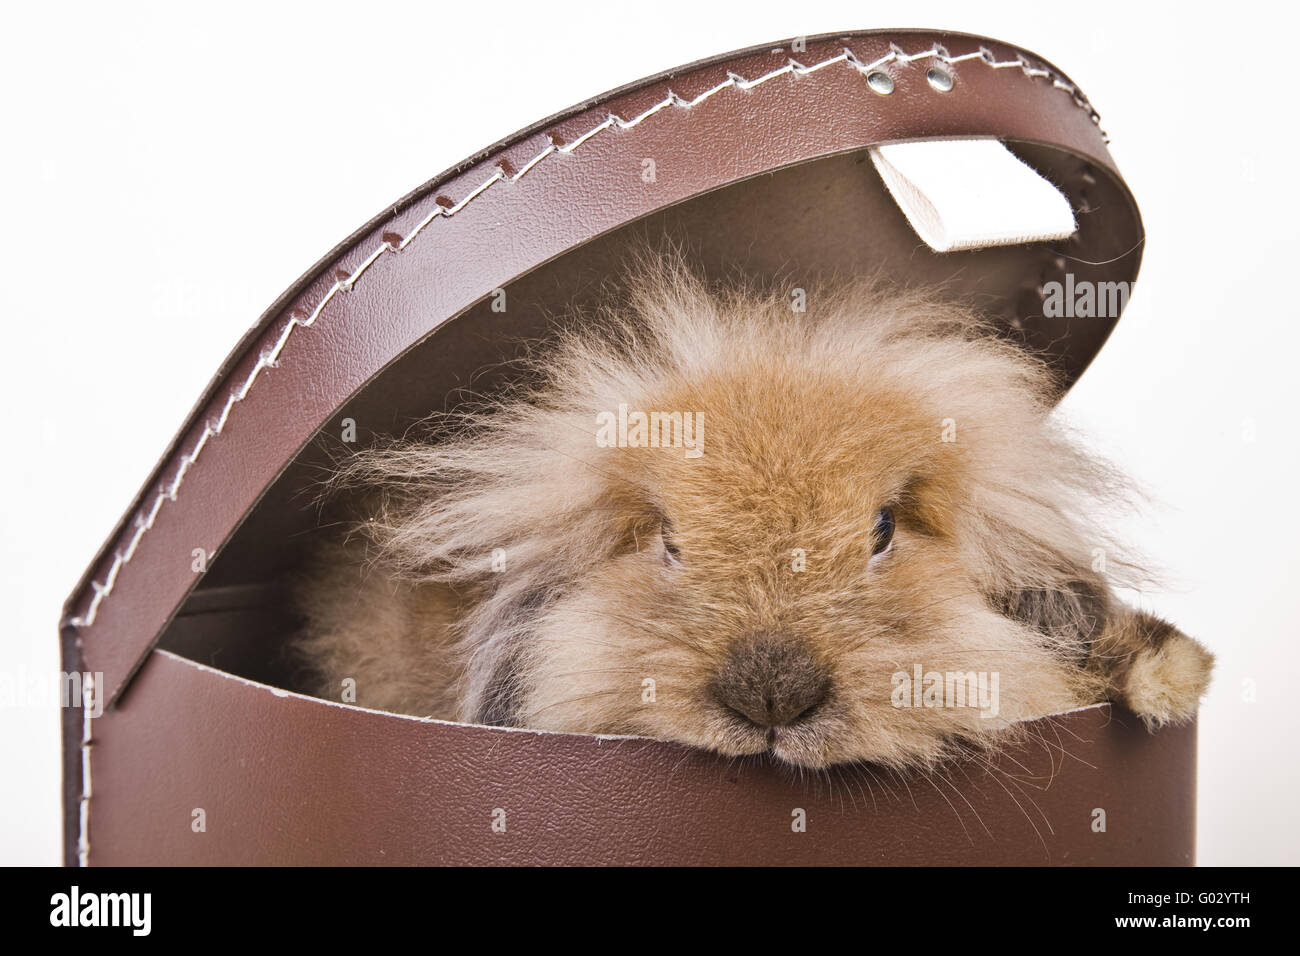 hare in a carton Stock Photo